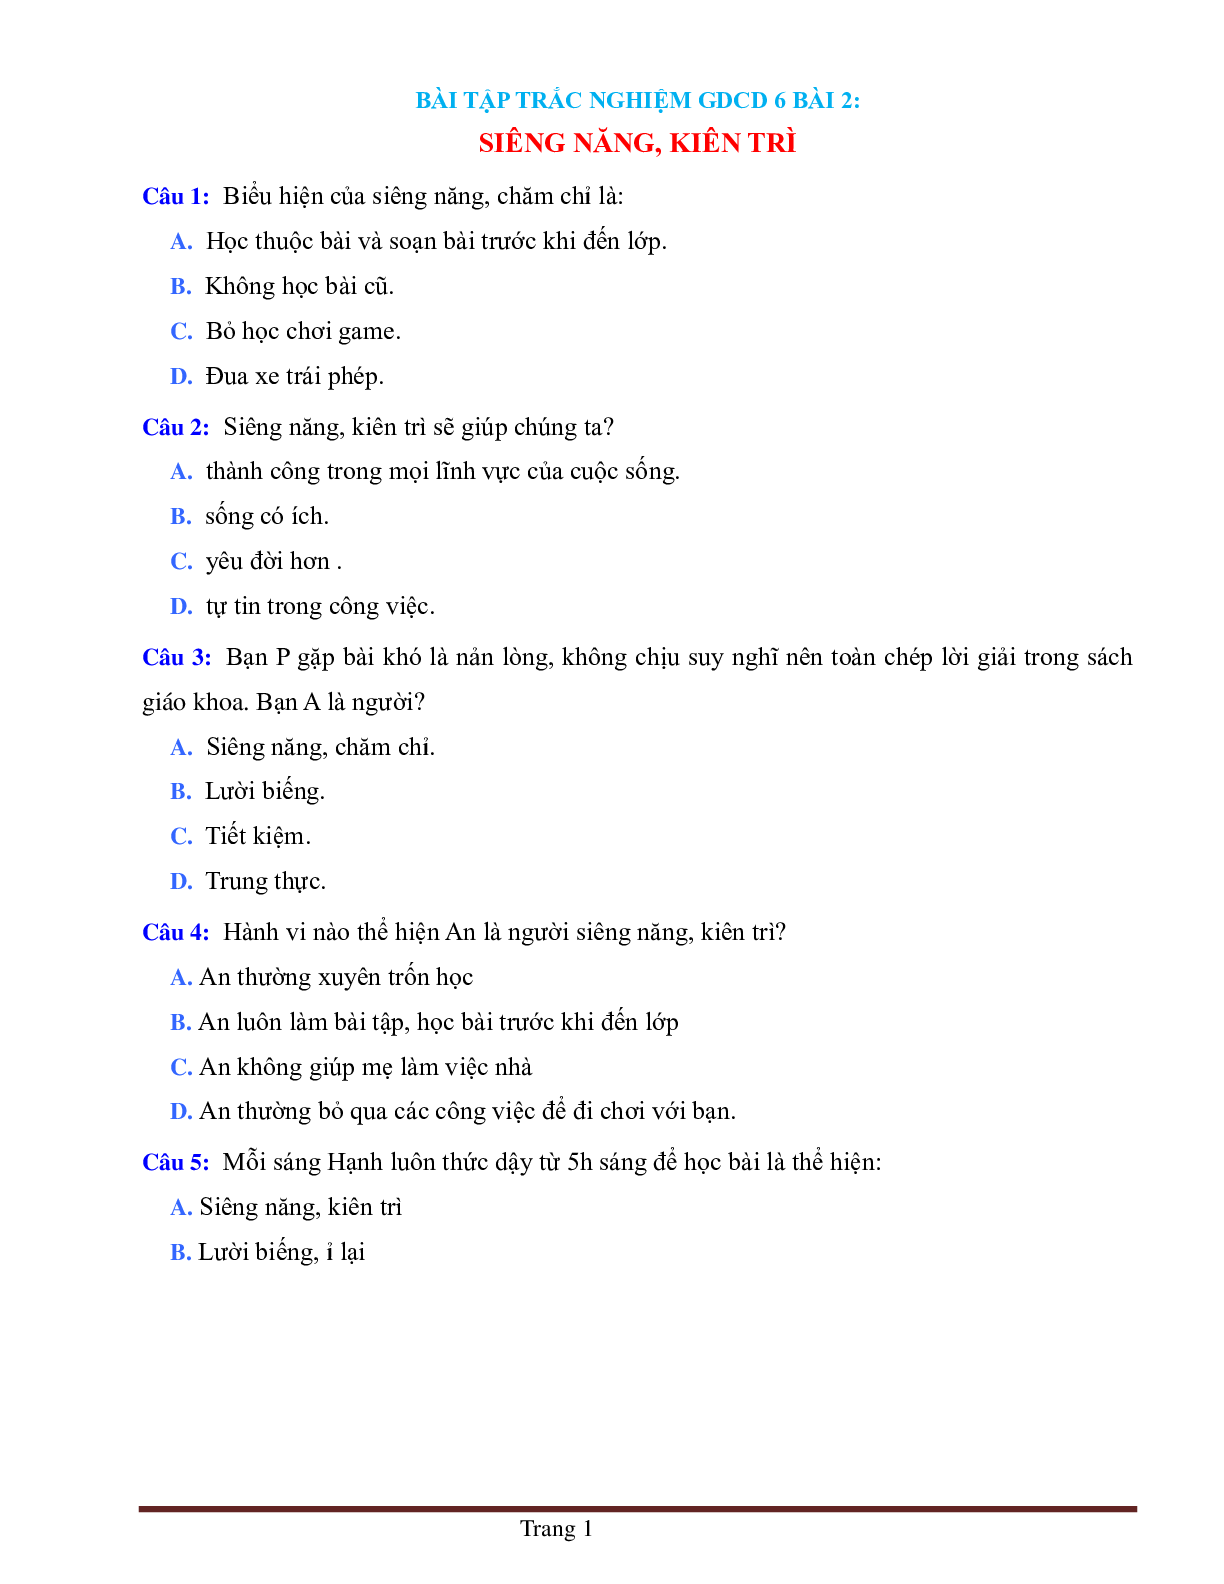 BÀI TẬP TRẮC NGHIỆM GDCD 6 BÀI 2: SIÊNG NĂNG, KIÊN TRÌ (trang 1)